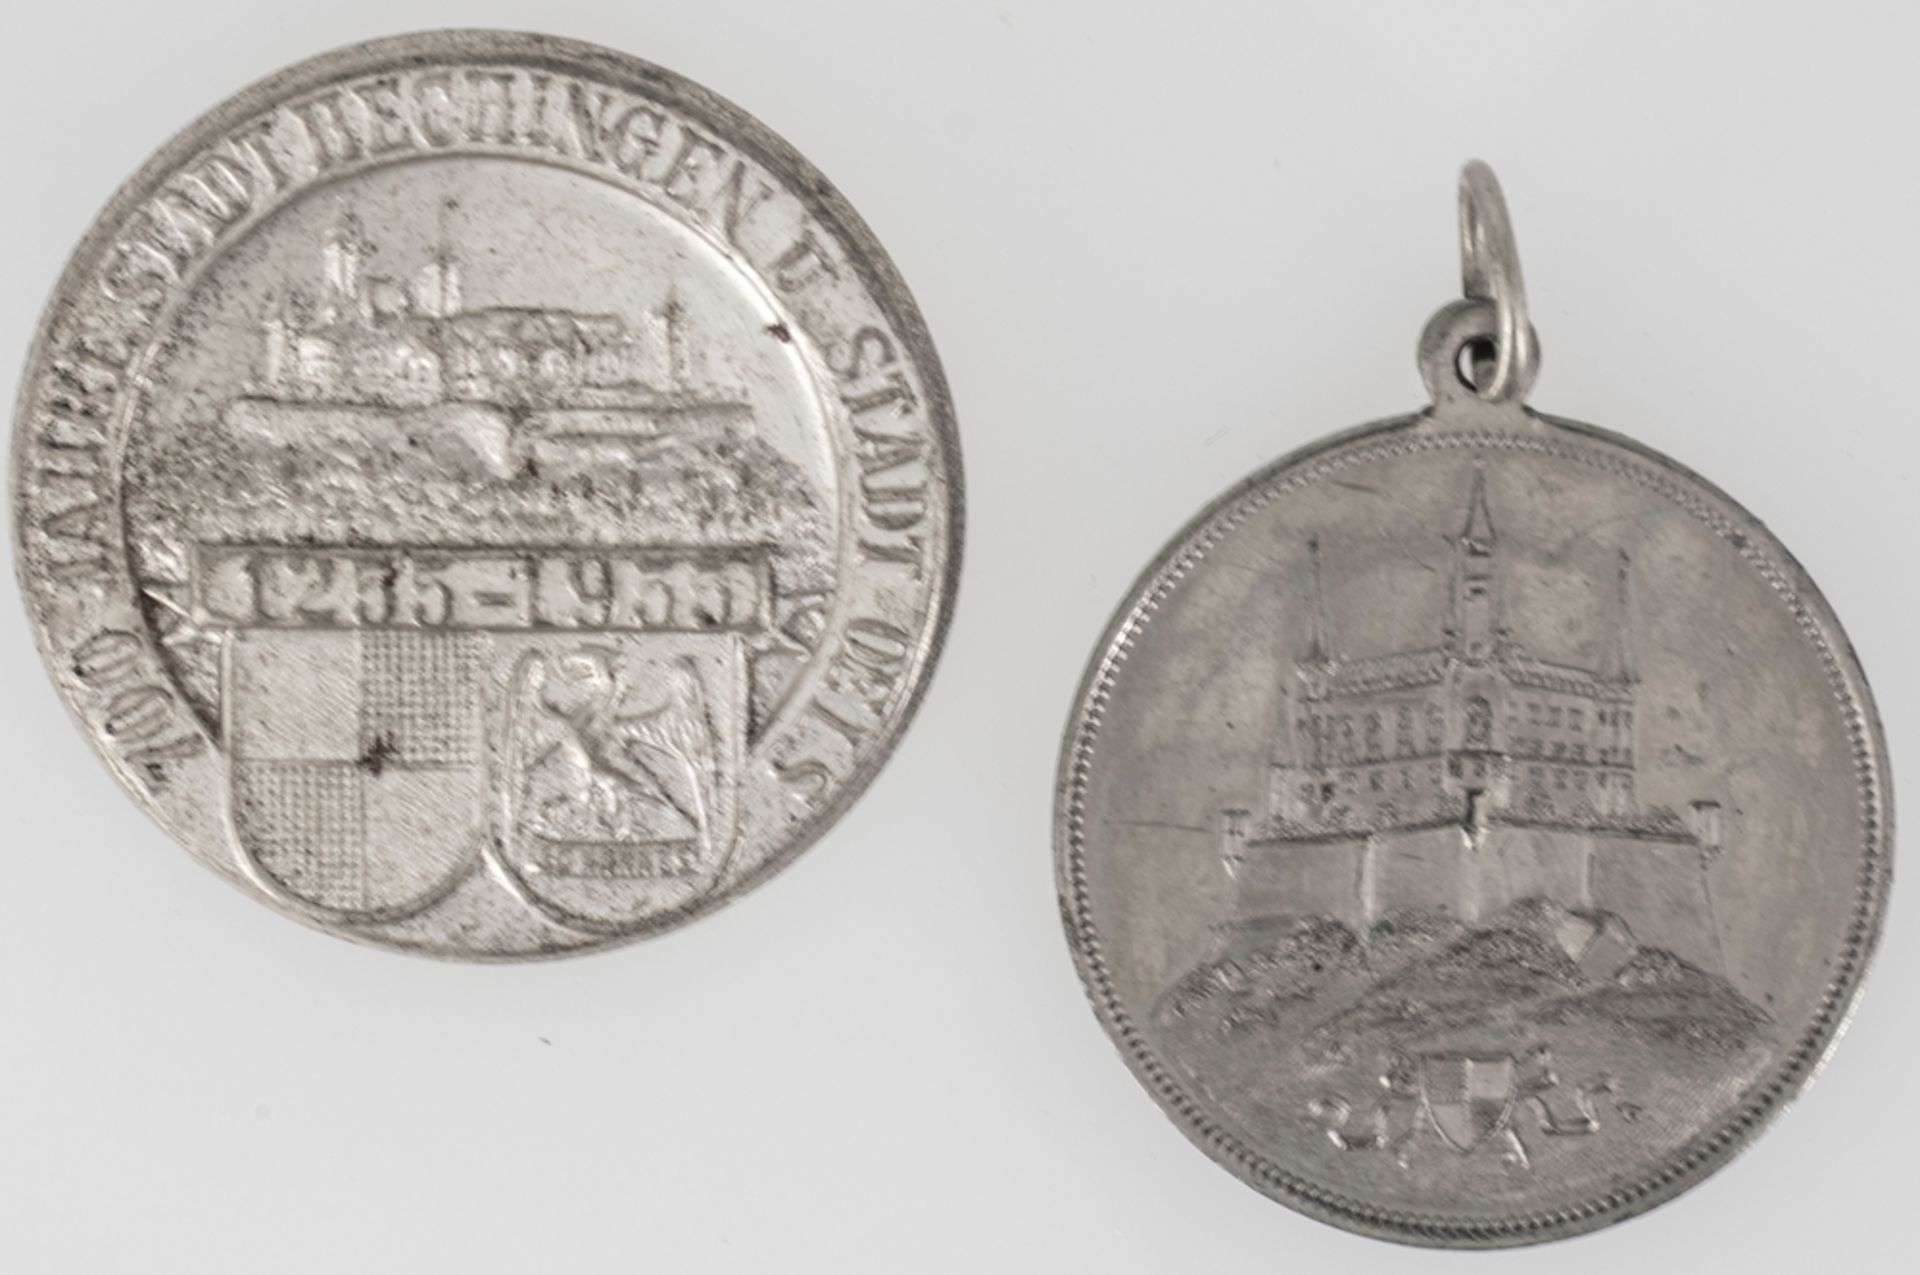 Tragbare Medaille "Zur Erinnerung an die Jubelfeier des Musikvereins Hechingen den 5. September